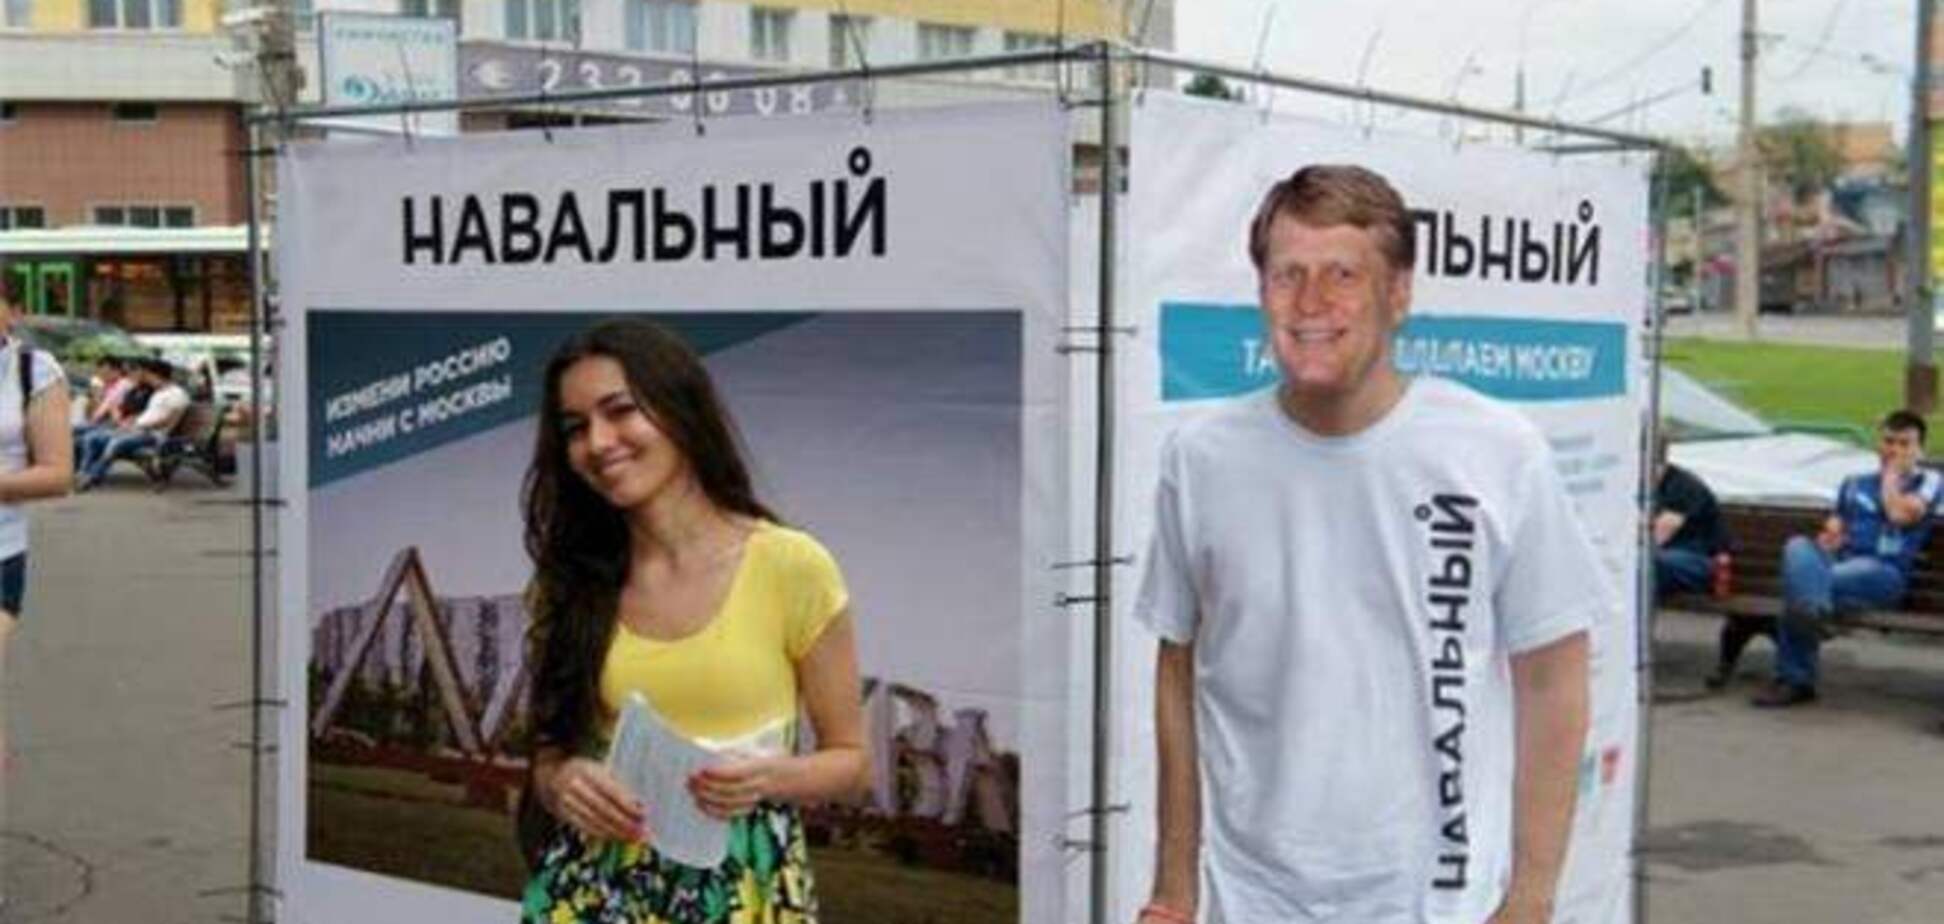 У Мережі з'явилося 'фото', на якому посол США в РФ агітує за Навального